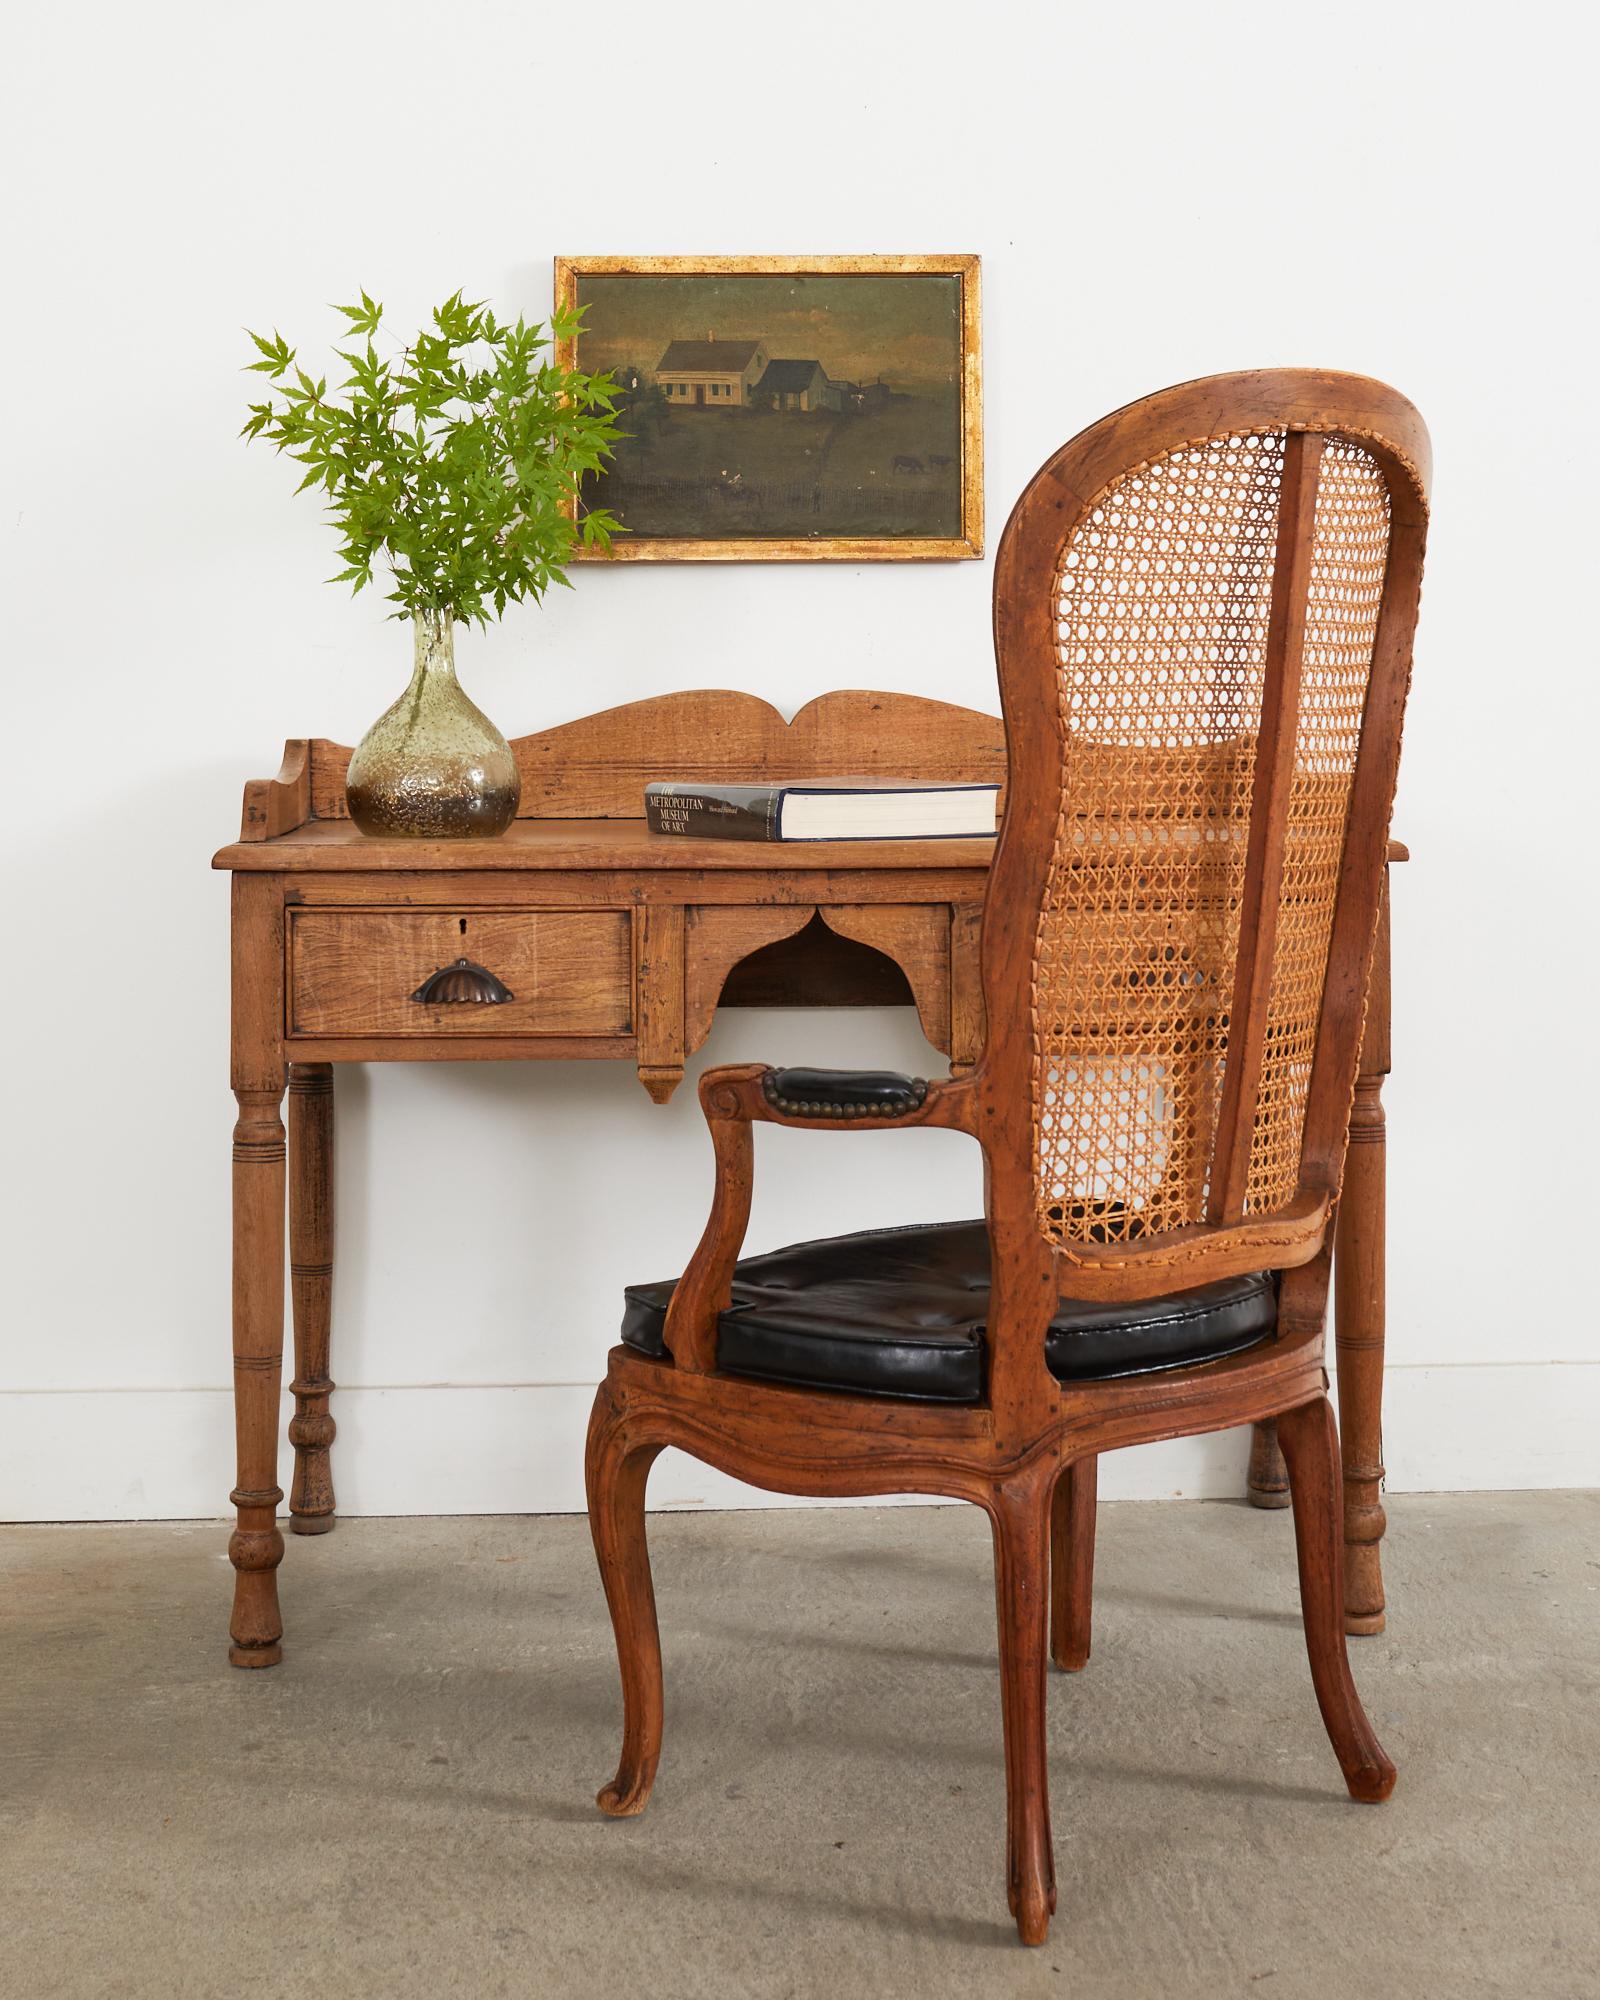 Fauteuil ou chaise de salon français du 19ème siècle, avec un rare dossier à cannelures hautes. Magnifiquement fabriqué en noyer avec une riche patine vieillie sur la finition. Le siège est doté d'un coussin d'assise ajusté en Naugahyde noir sur une